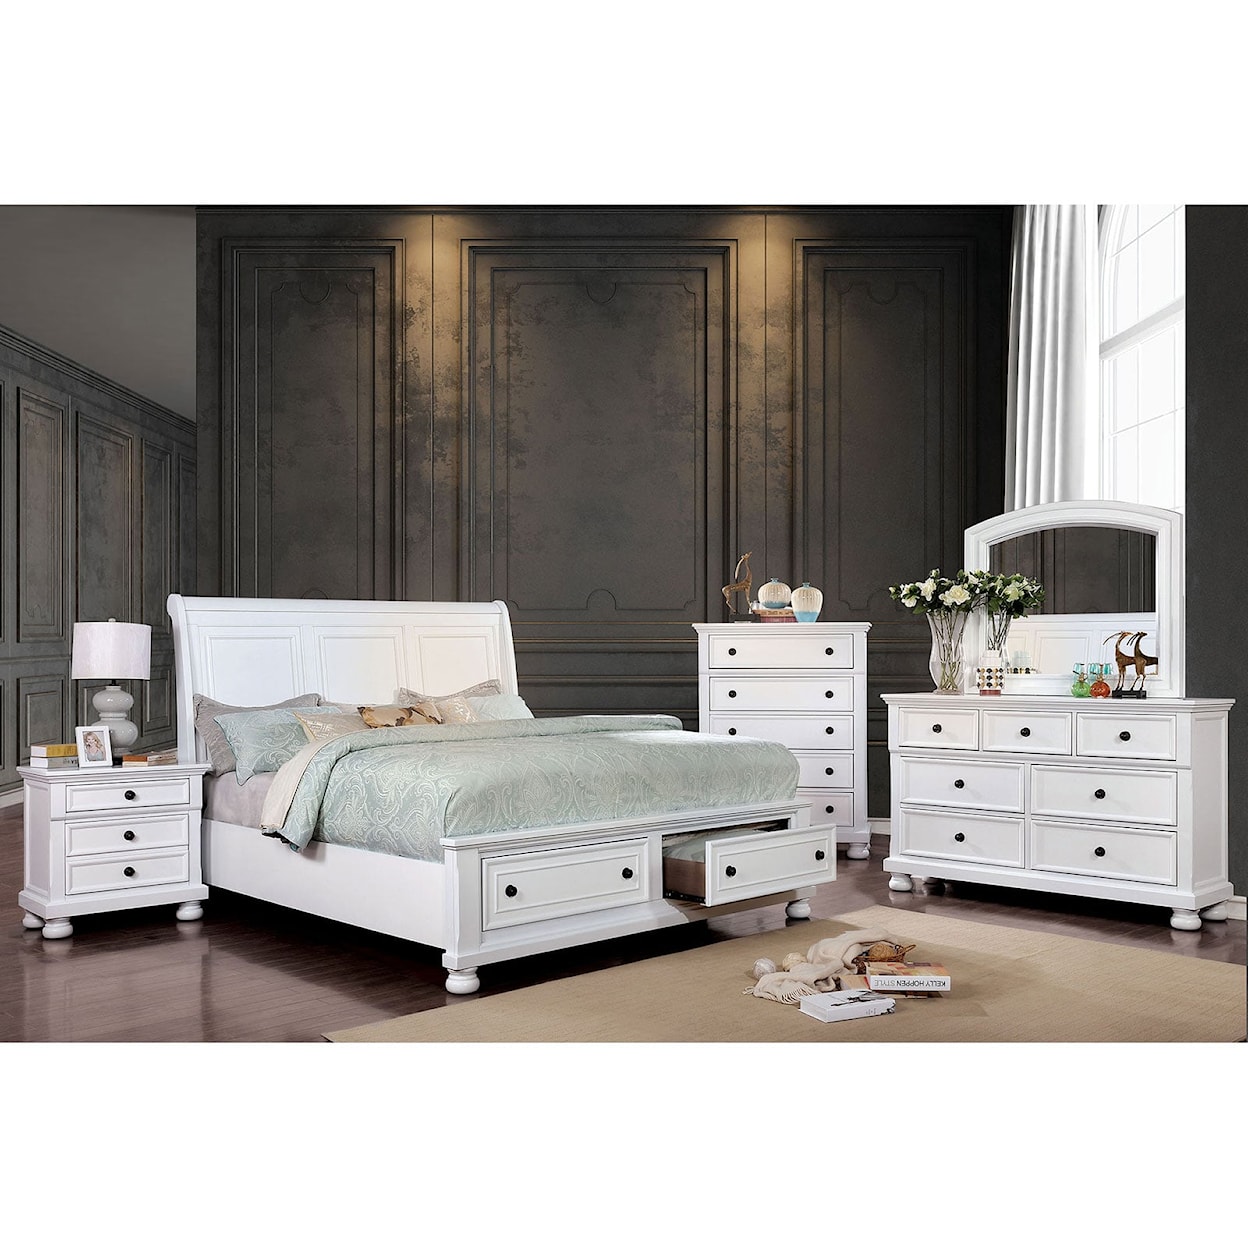 Furniture of America Castor 5 Pc. Queen Bedroom Set w/ 2NS